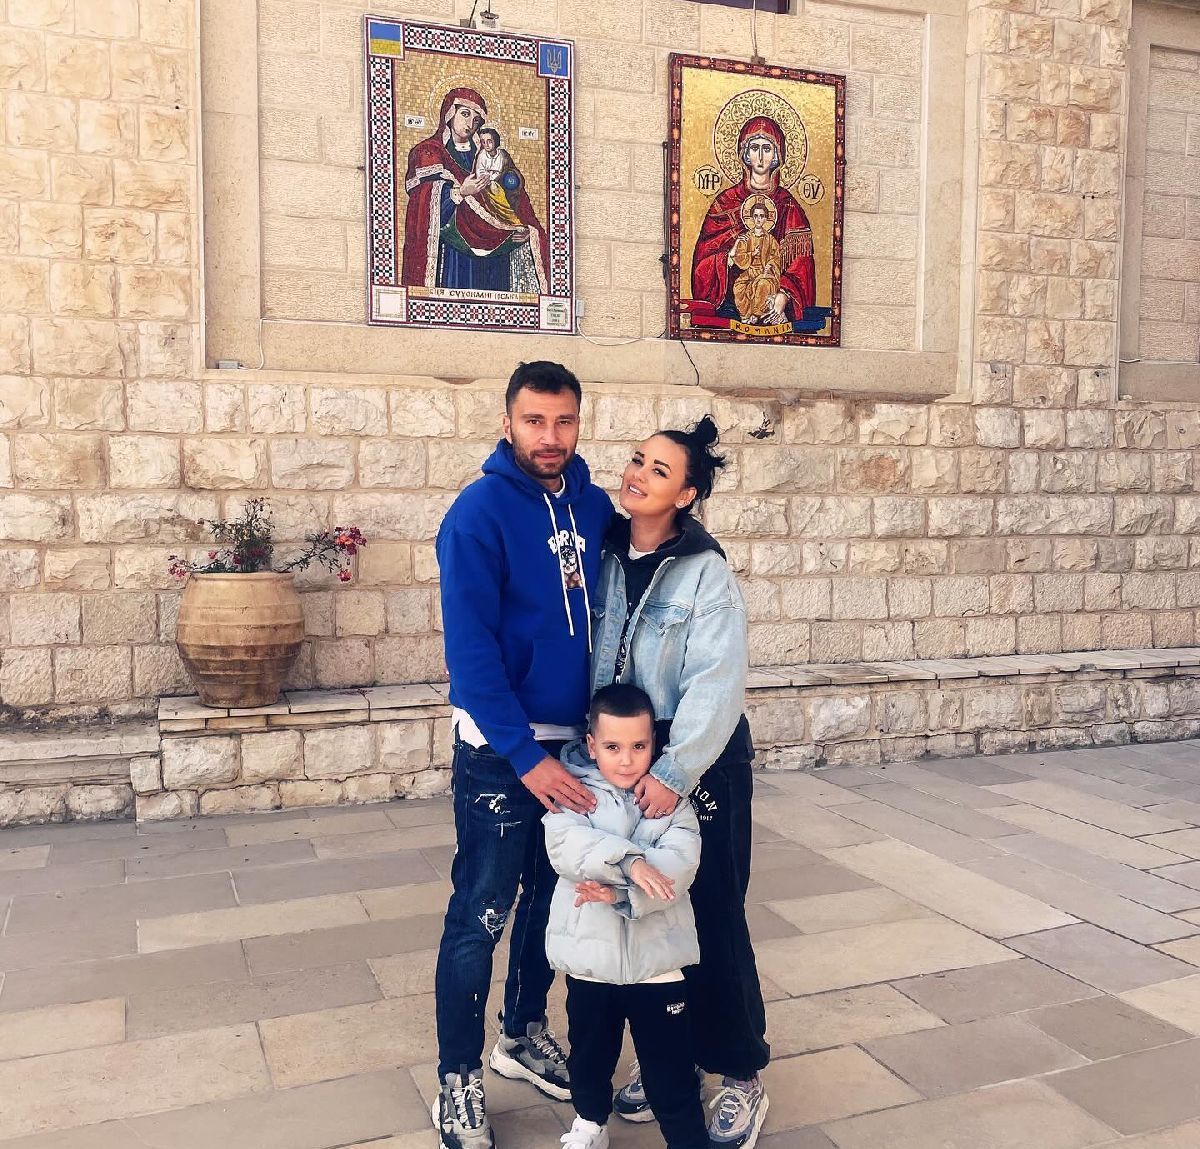 Fotbalistul român din Israel: „Nu mi-e frică de nimic! Armata e puternică” » Concluzii după 3 luni în țara atacată de Iran